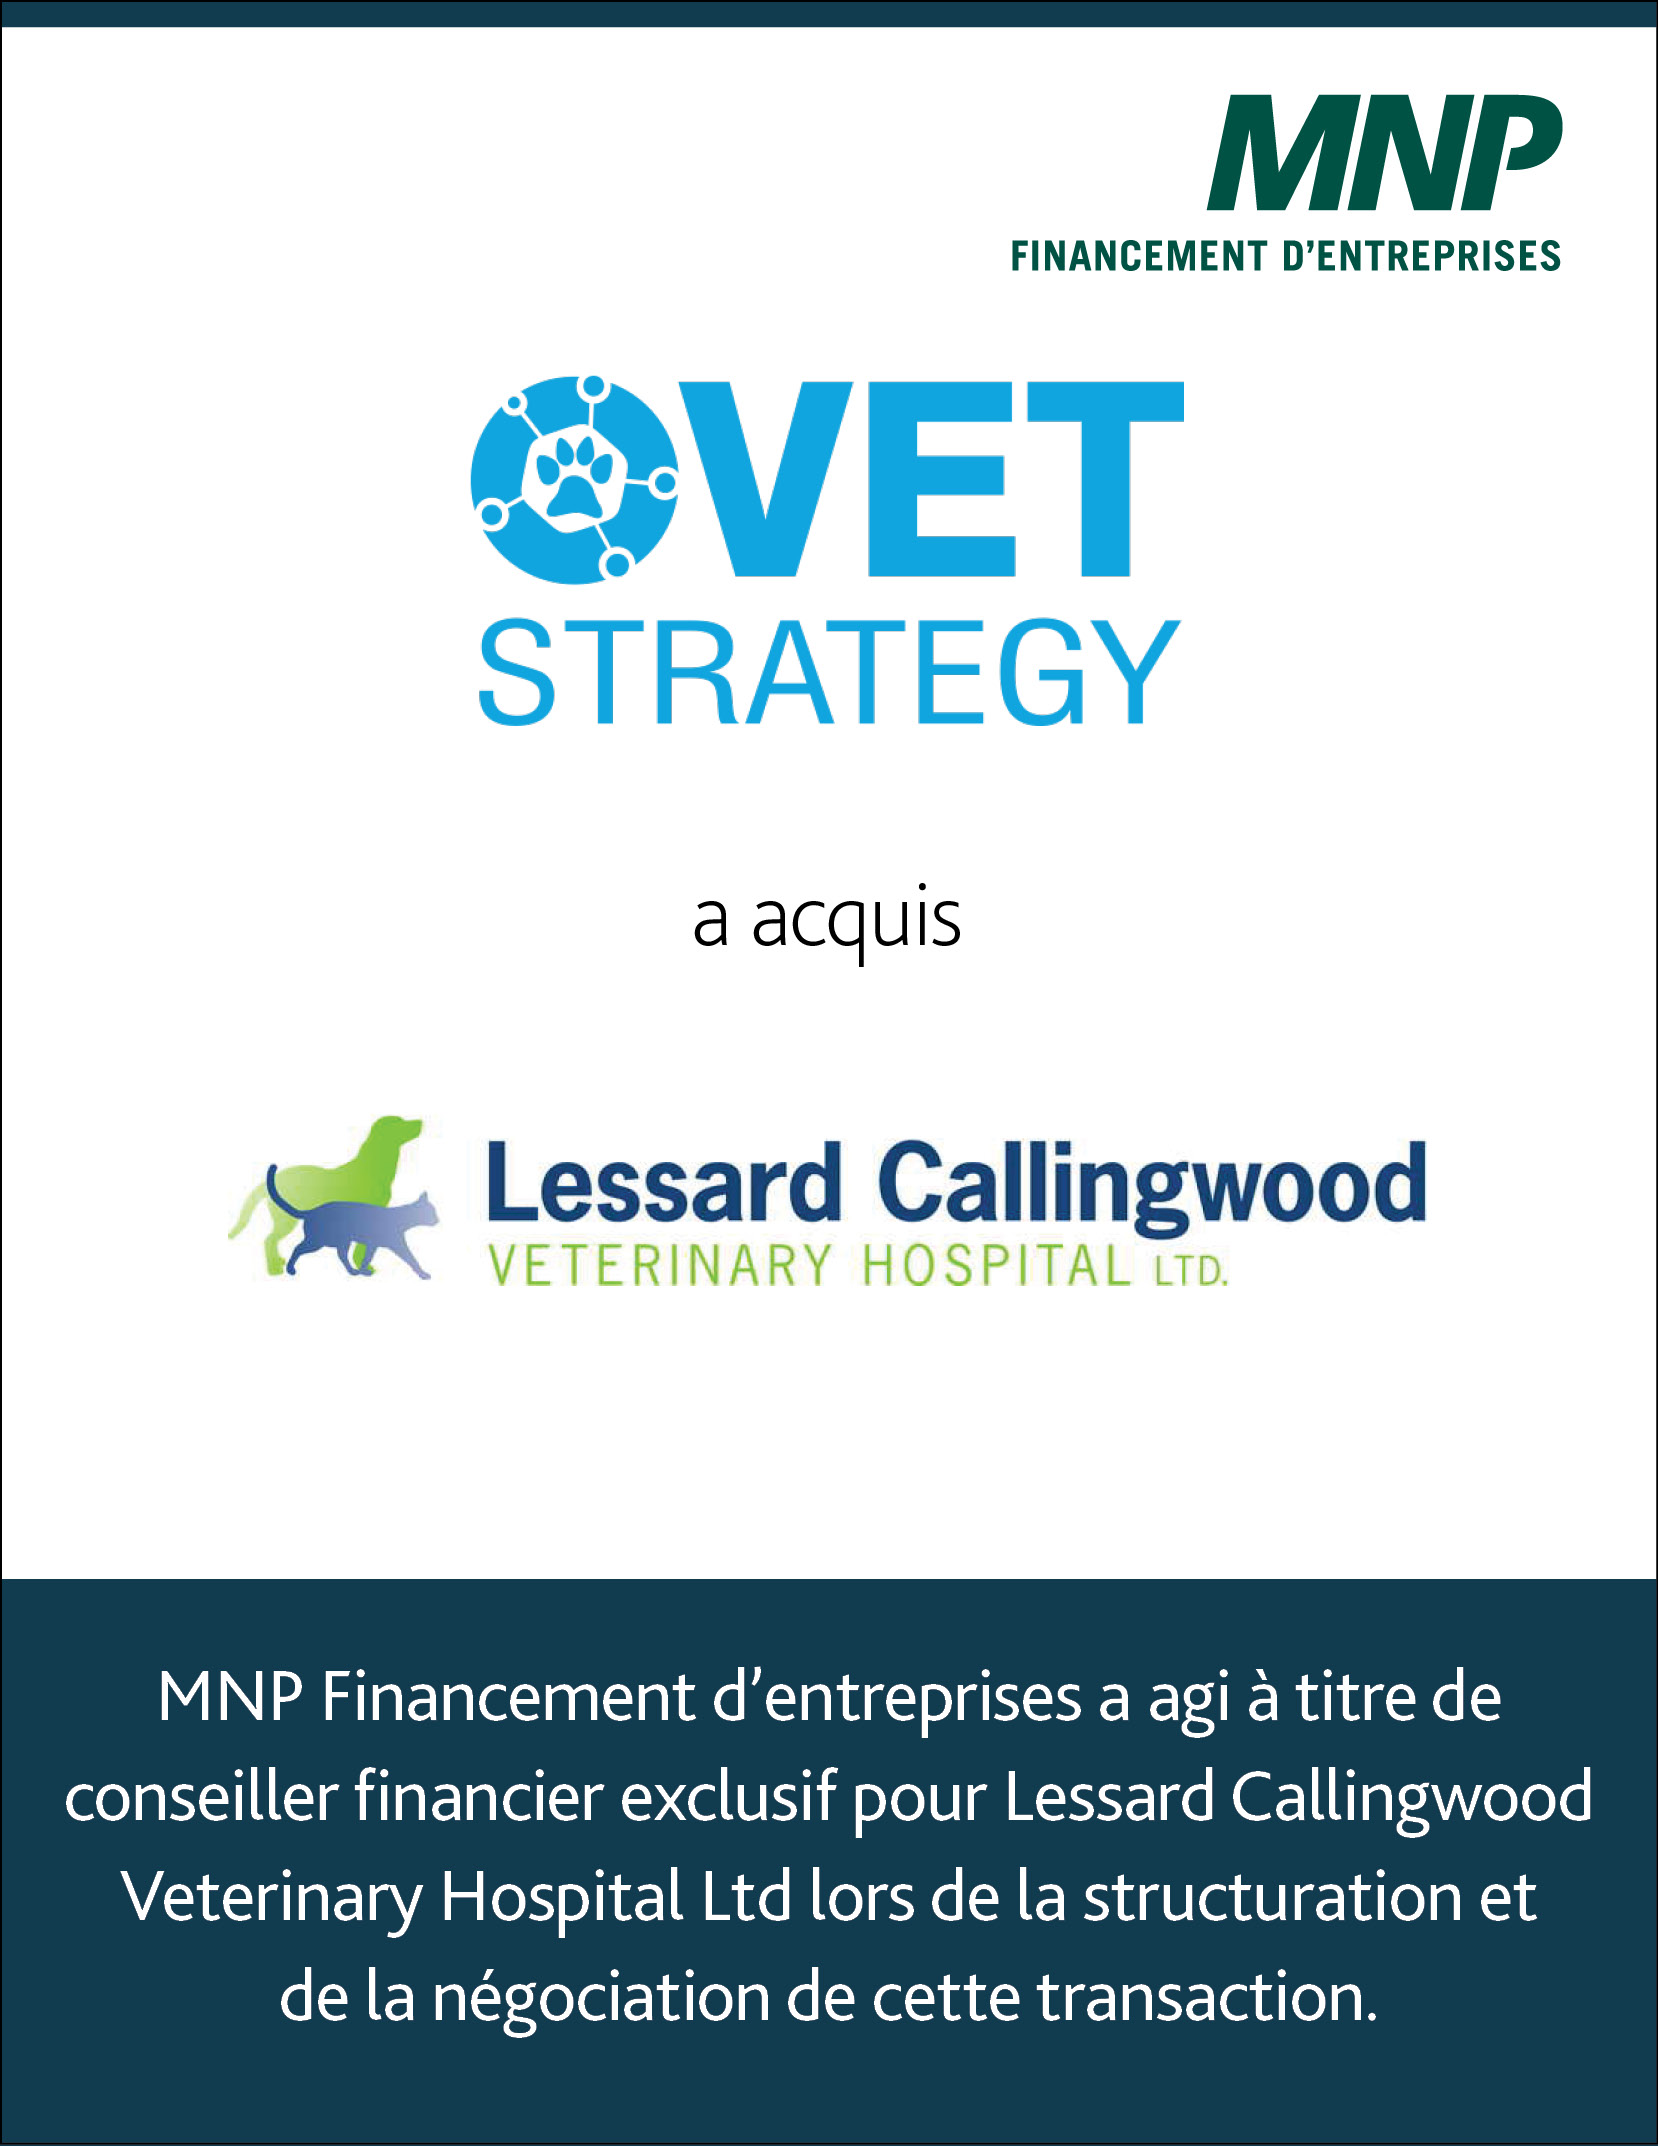 Lessard Callingwood Veterinary Hospital 